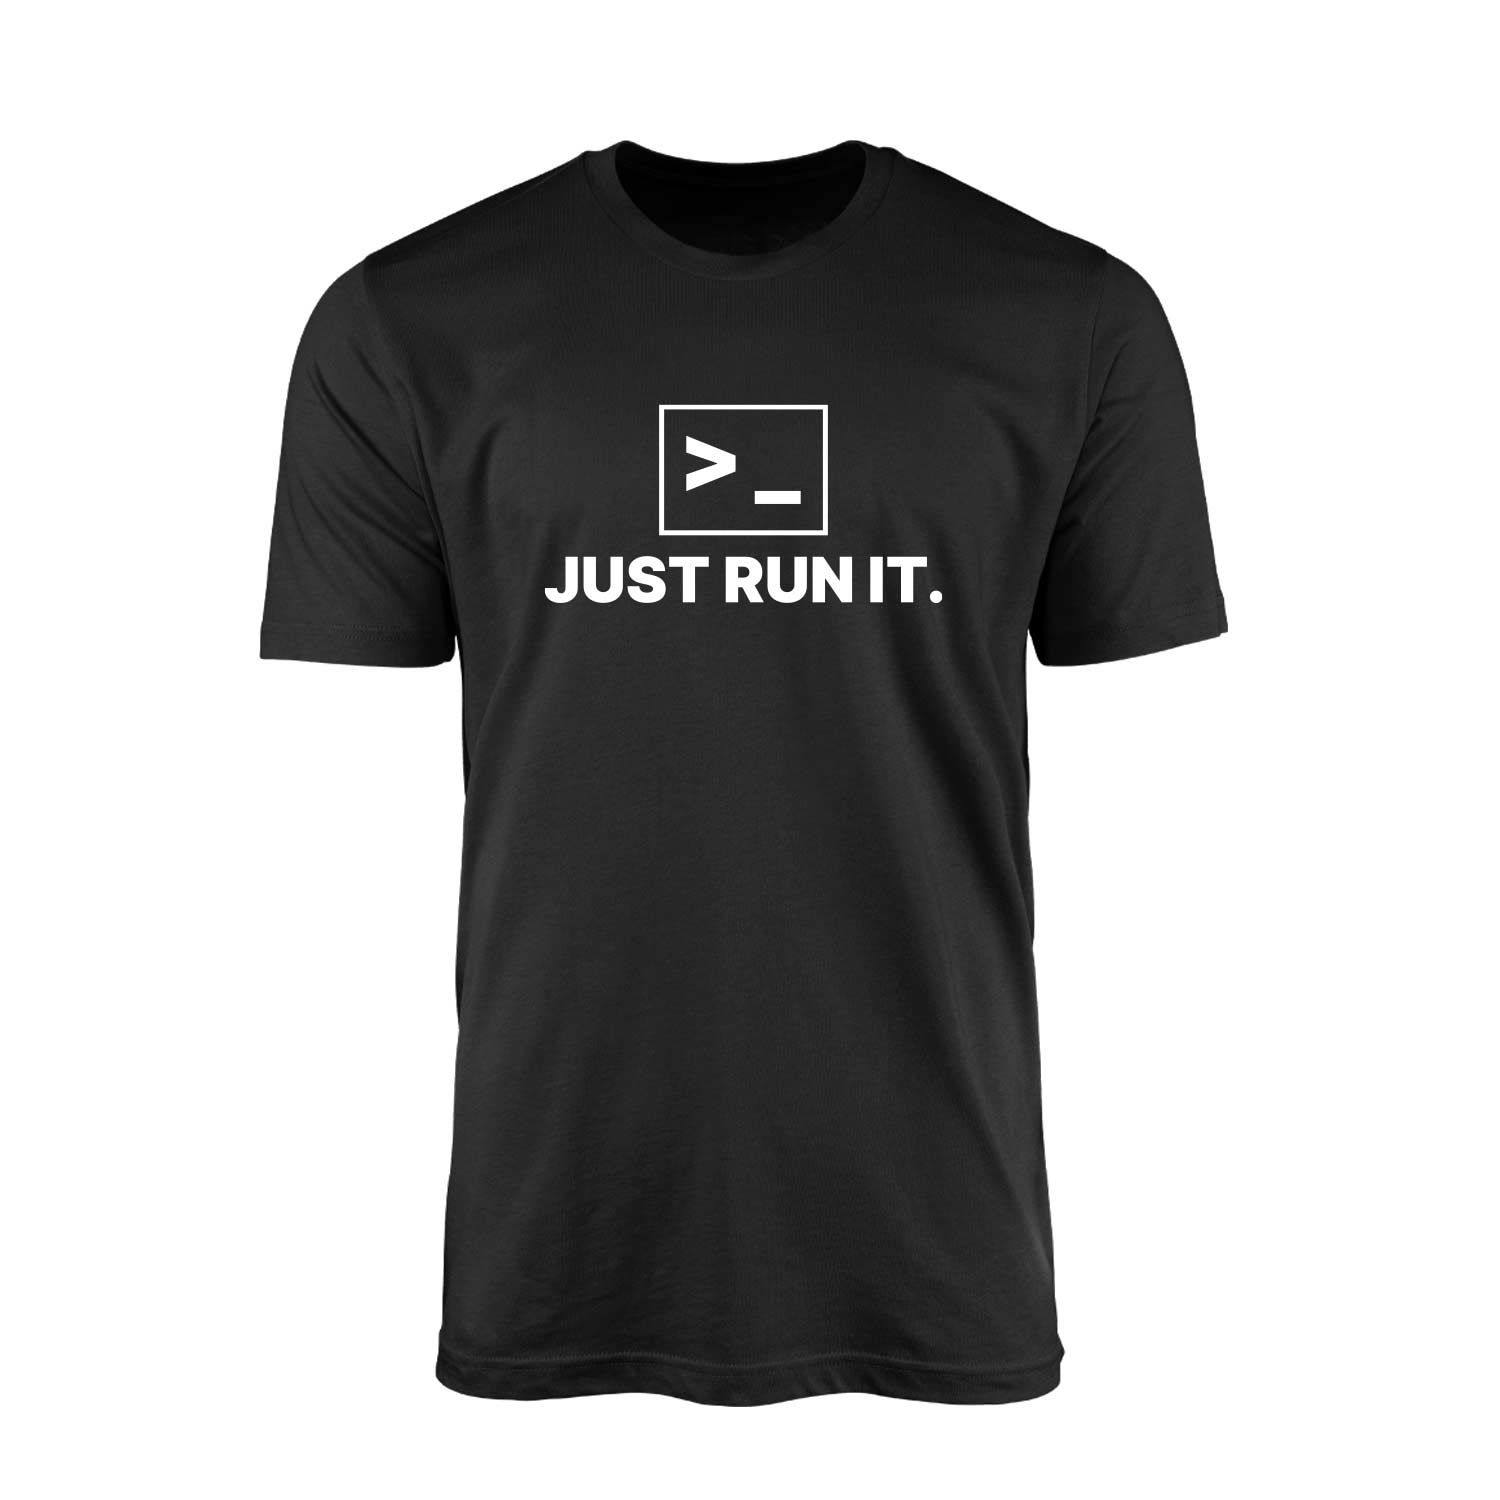 Just Run It. Siyah Tişört